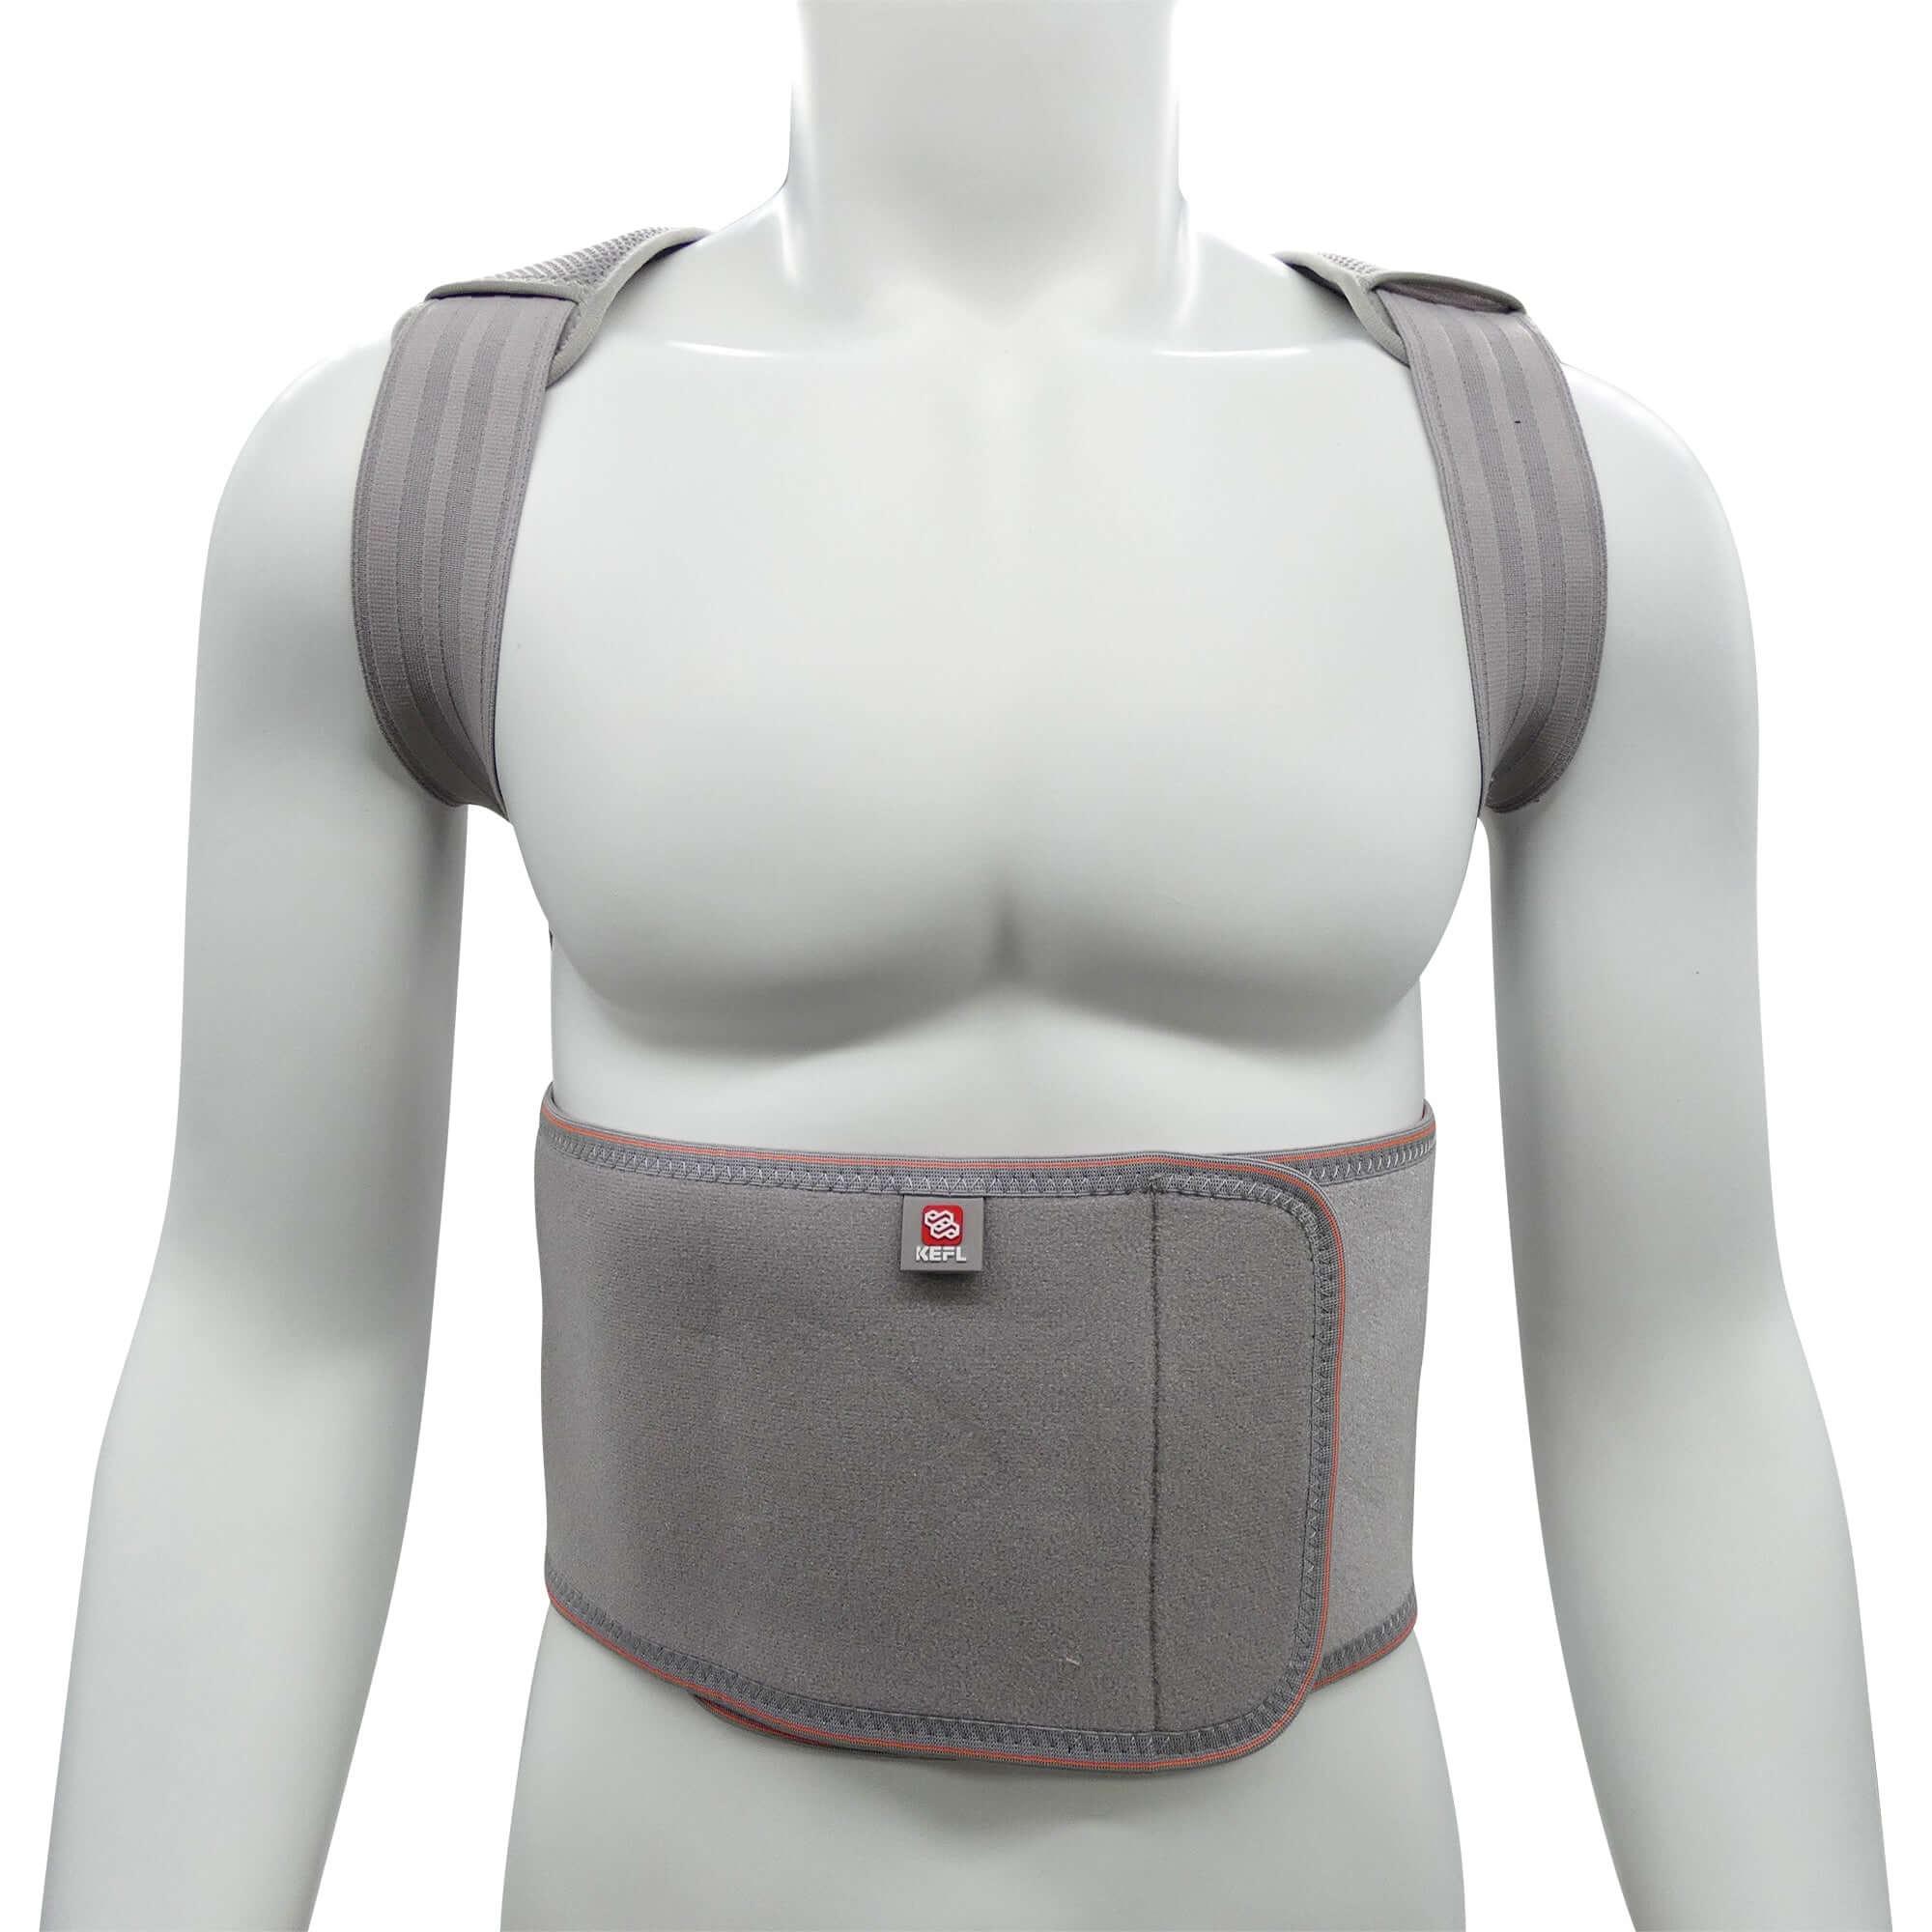 Back Brace Posture Corrector Spinal Support - Upper and Lower Back Support, Adjustable Neoprene Belt Strap - KEFLUK